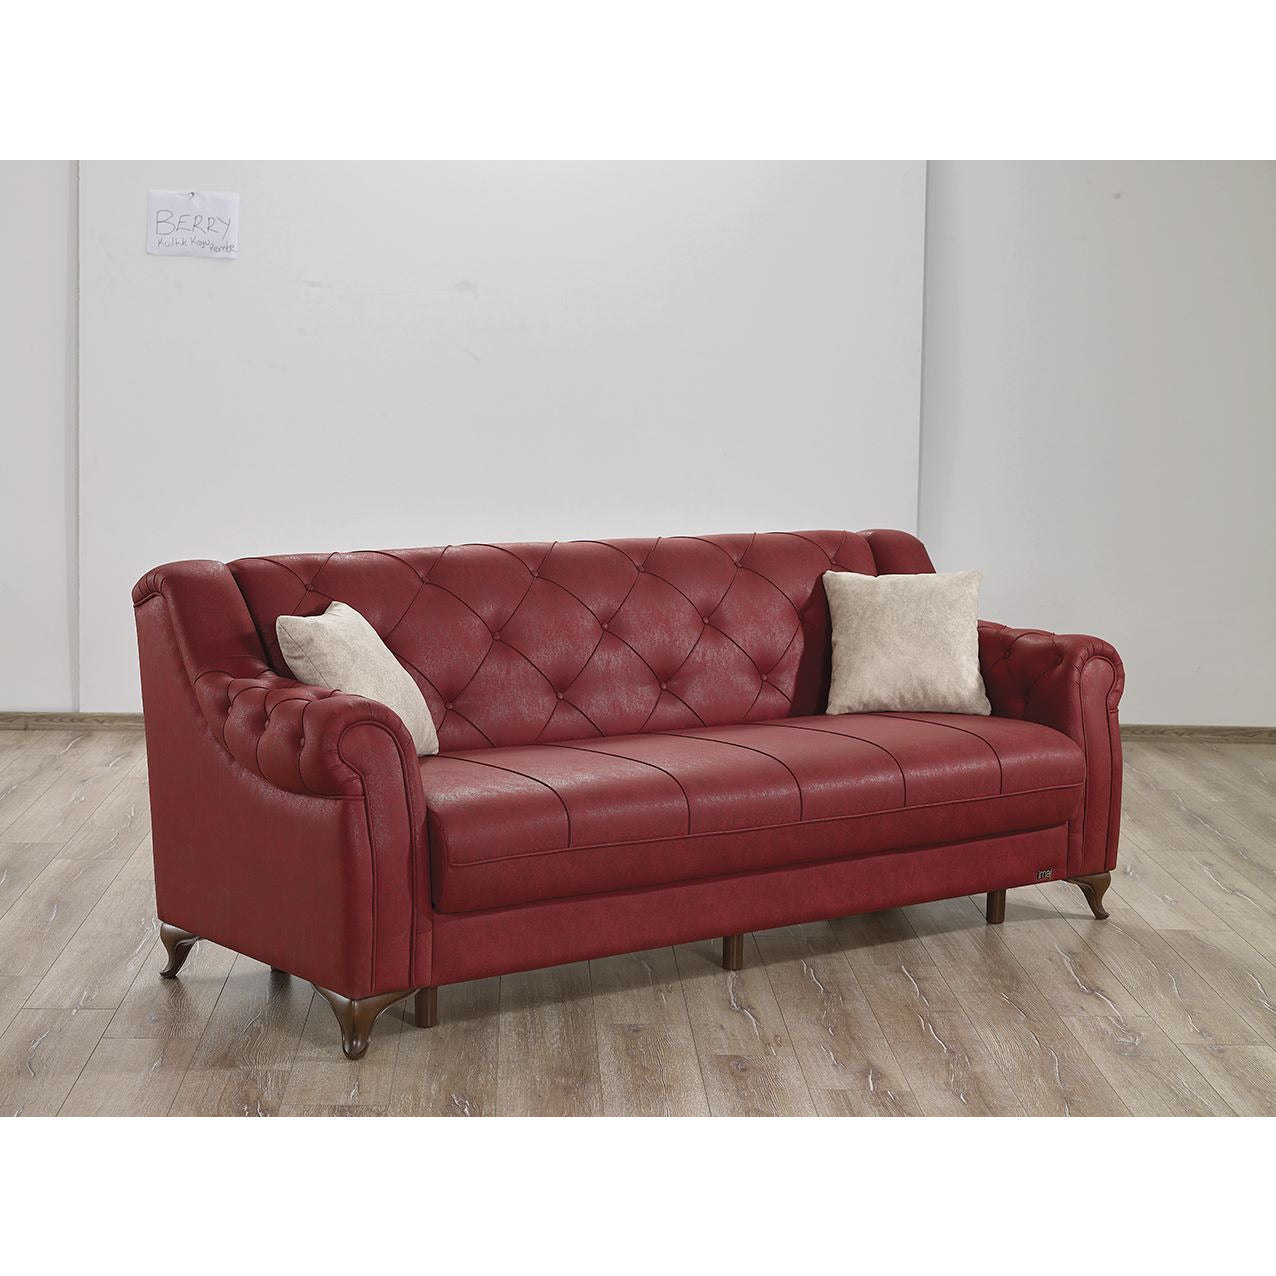 Berry Fåtölj - LINE Furniture Group